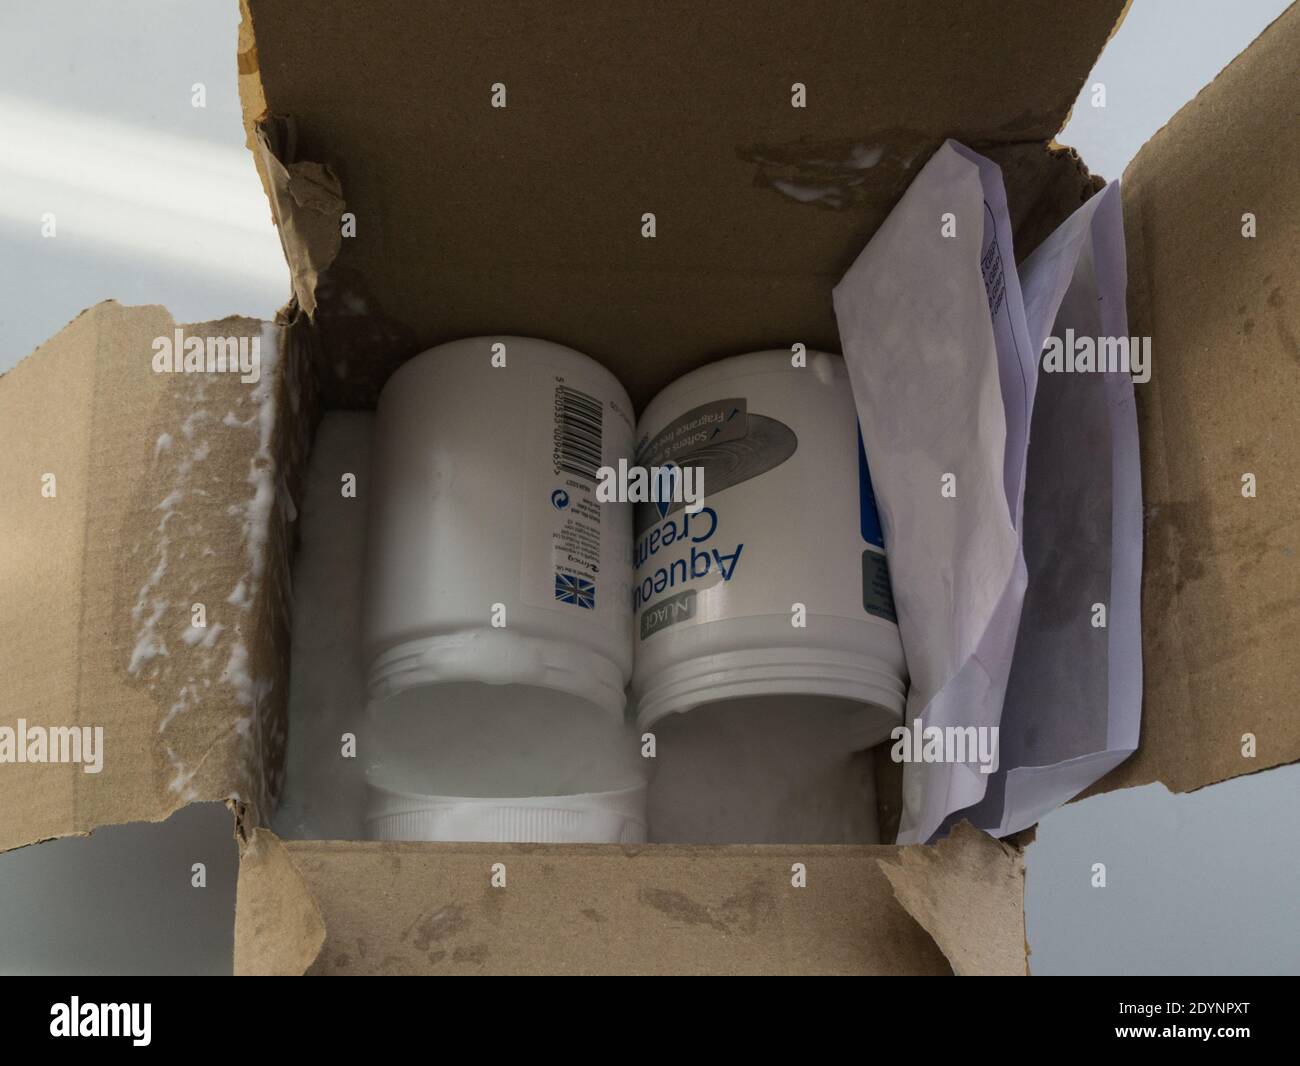 Due vaschette di crema acquosa ordinate online ricevute in pacchi le parti superiori si sono staccate e il contenuto si è versato nella scatola di cartone Foto Stock